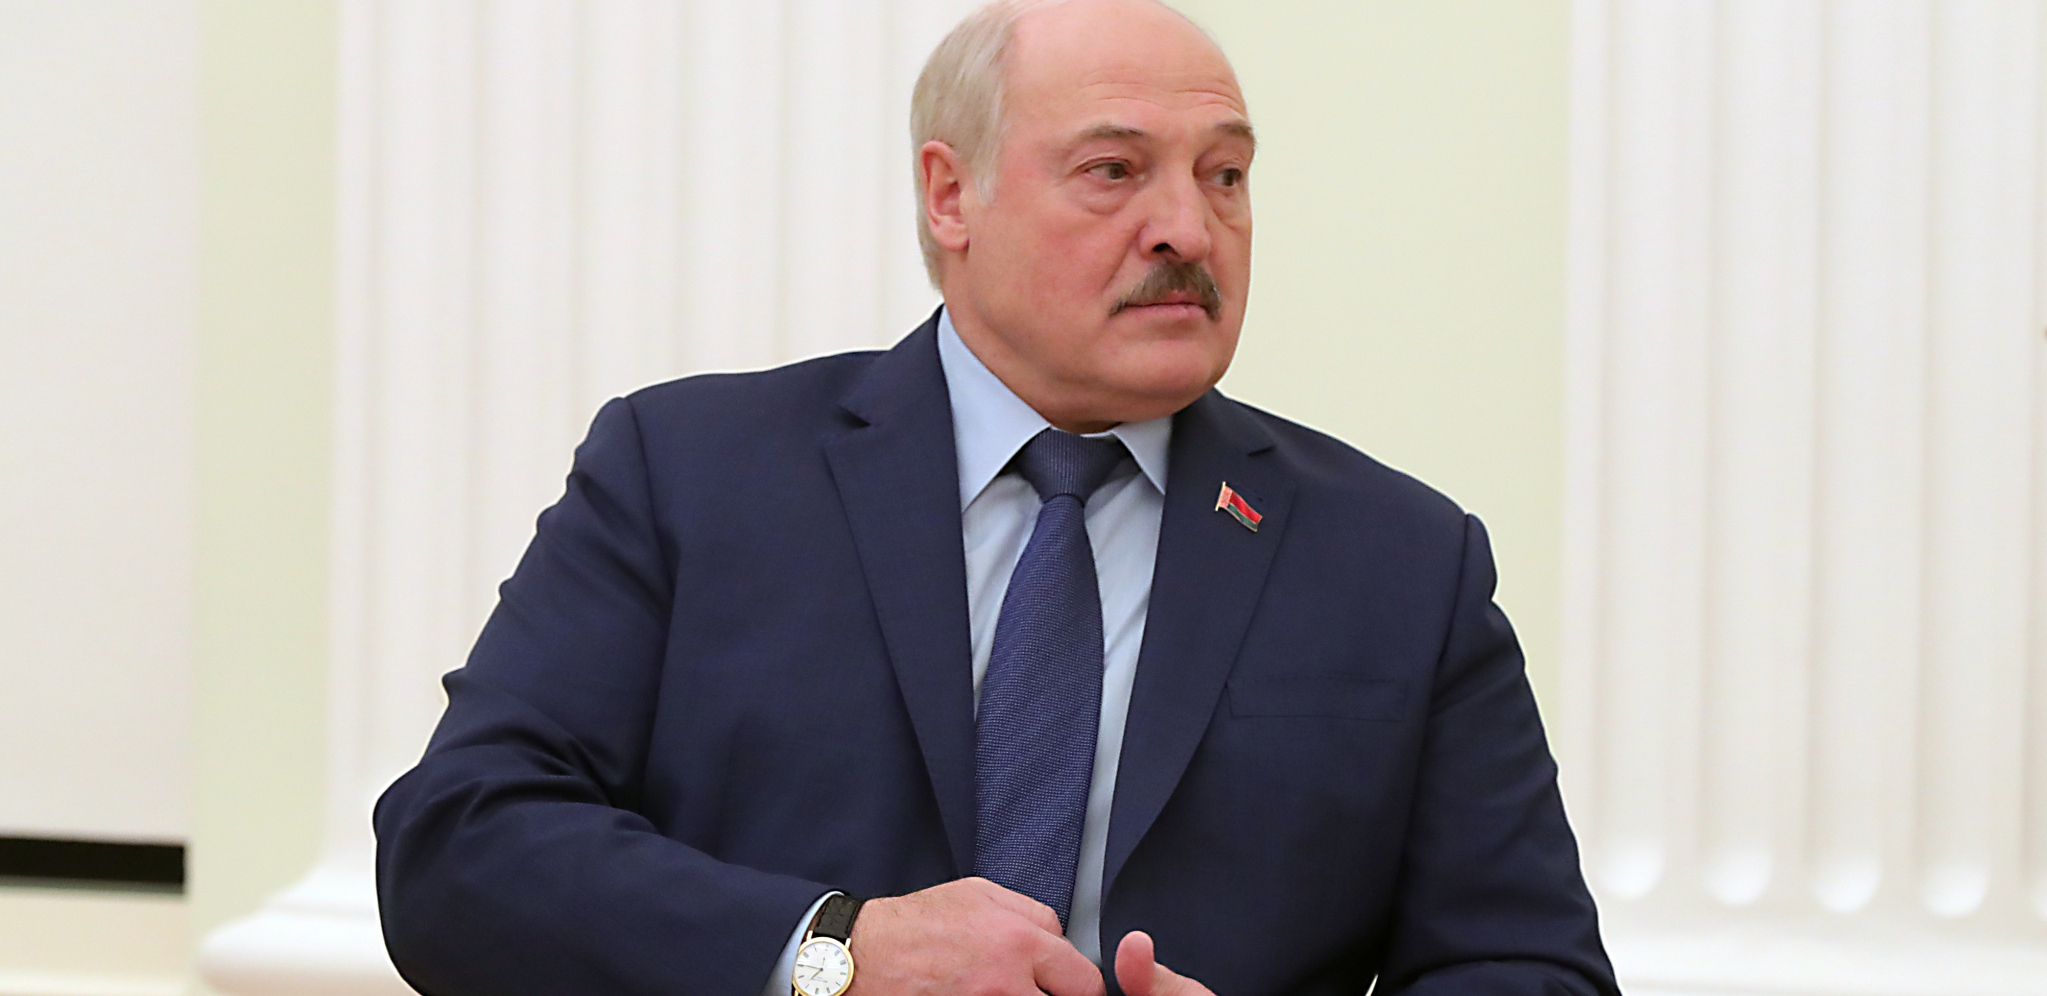 PREDSEDNIK BELORUSIJE POTPISAO VAŽAN UKAZ Lukašenko doneo jasnu odluku